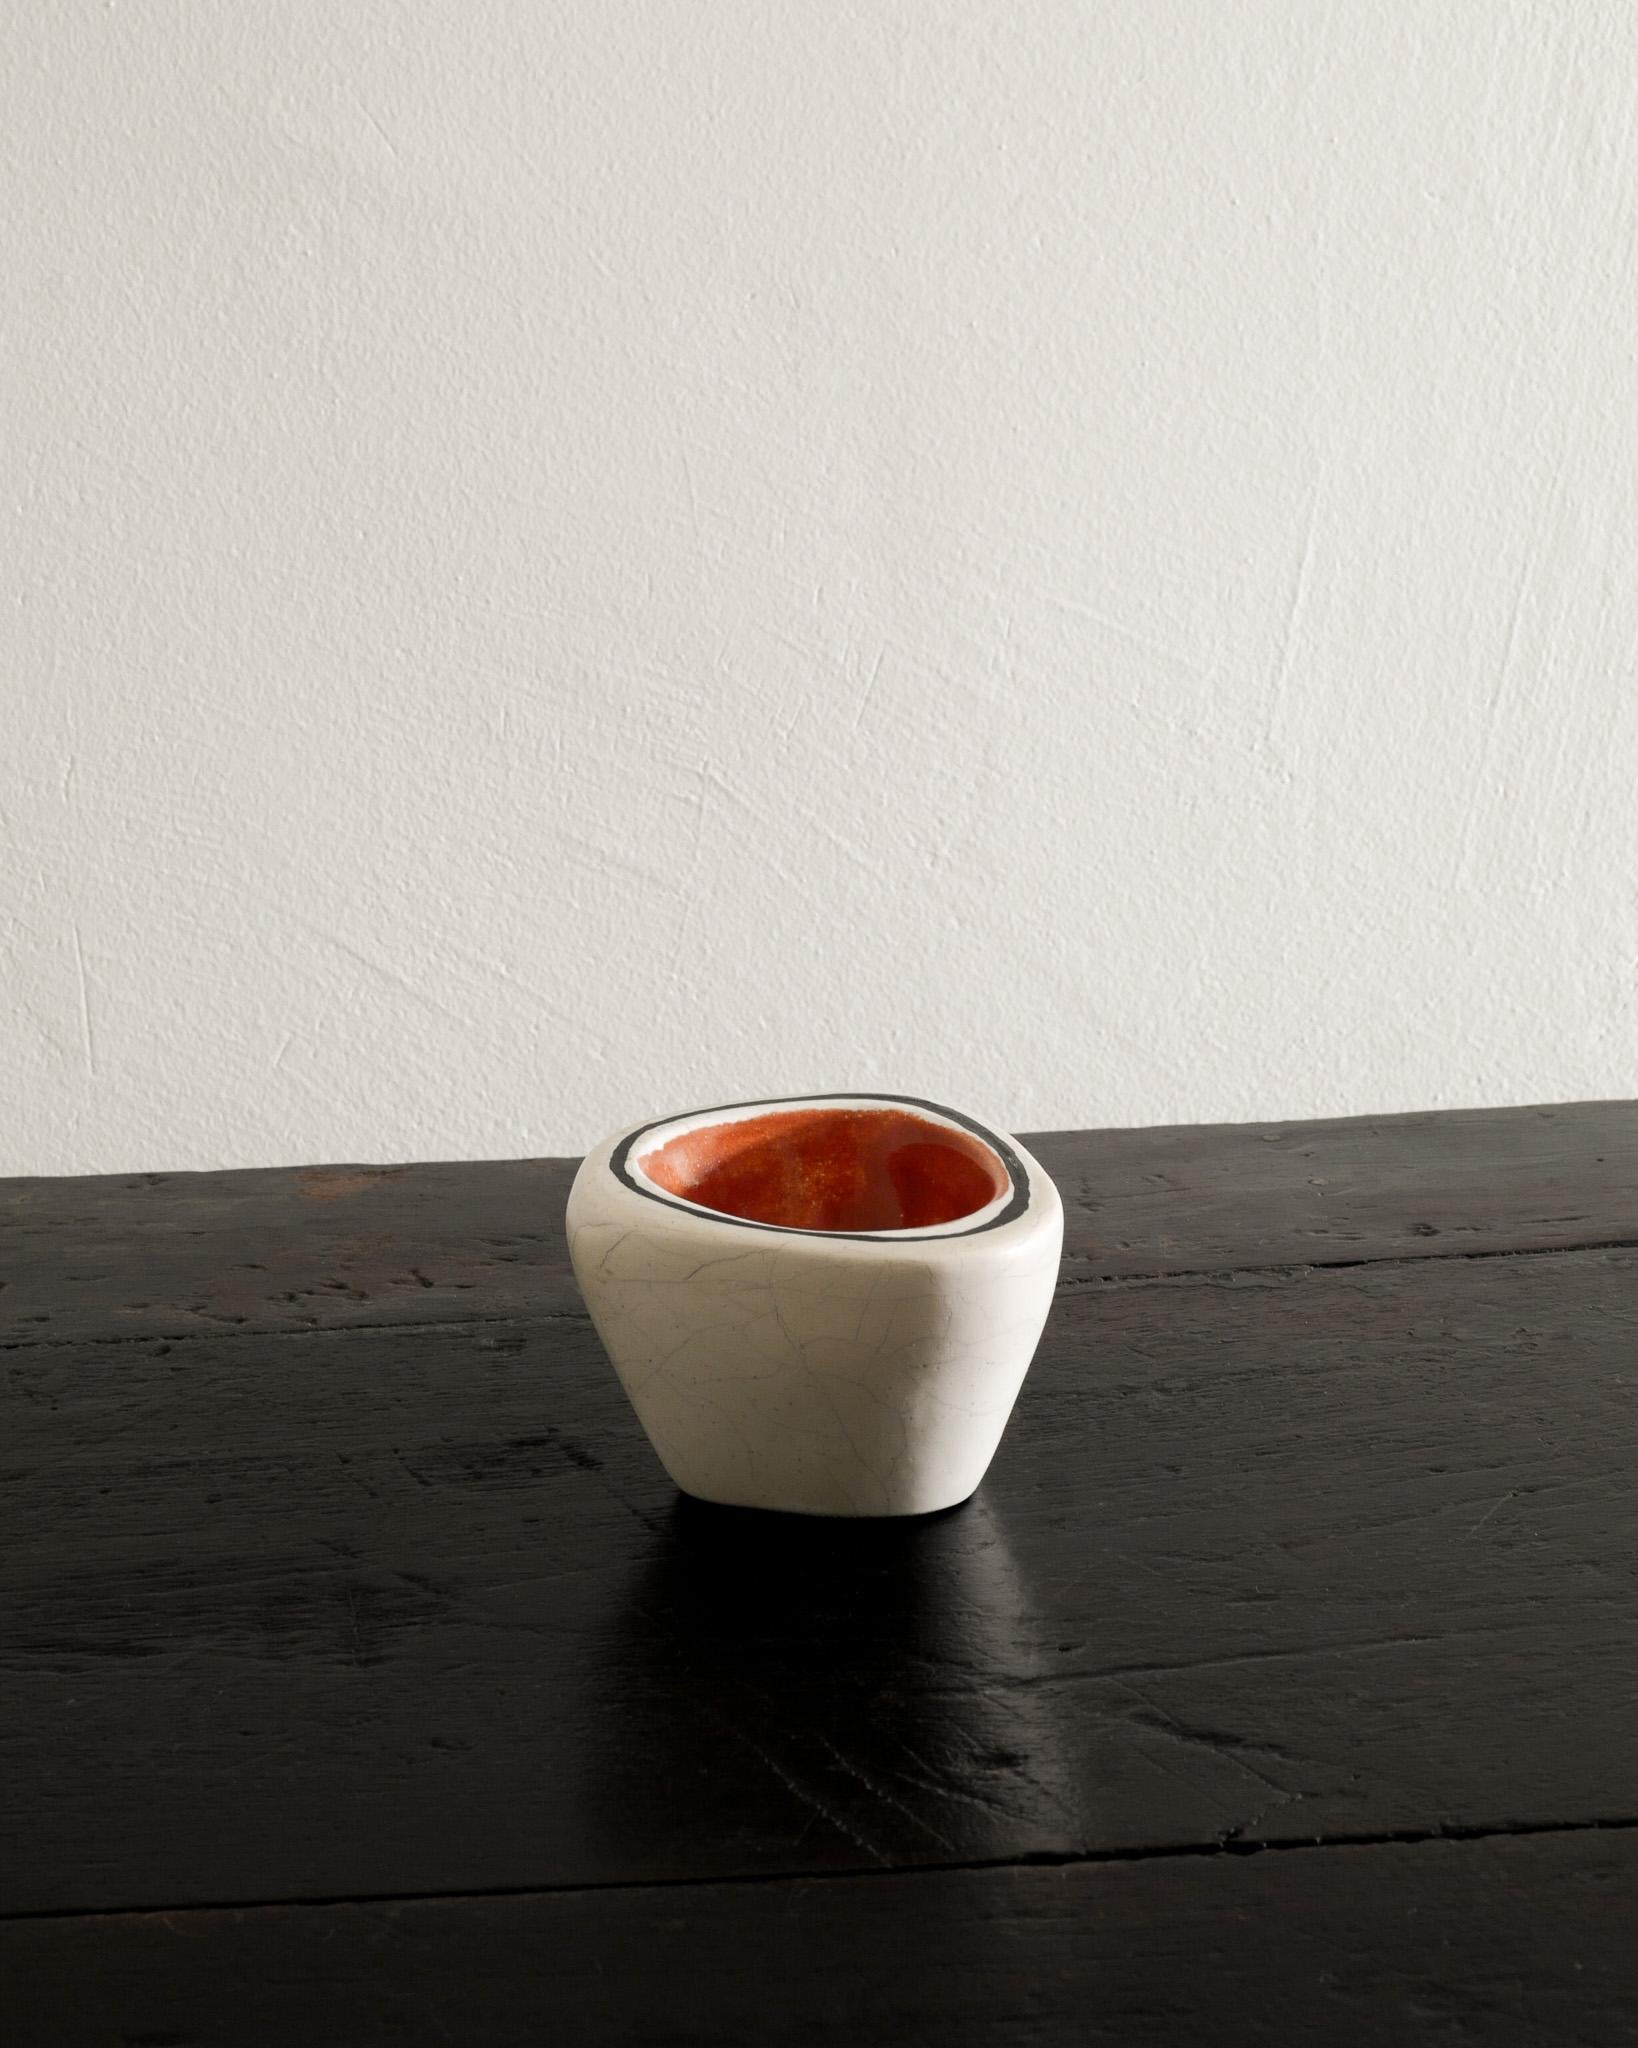 Très rare bol / tasse en céramique du milieu du siècle en émail blanc, rouge et noir par Georges Jouve produit en France, années 1950. En bon état d'origine.
Signé 